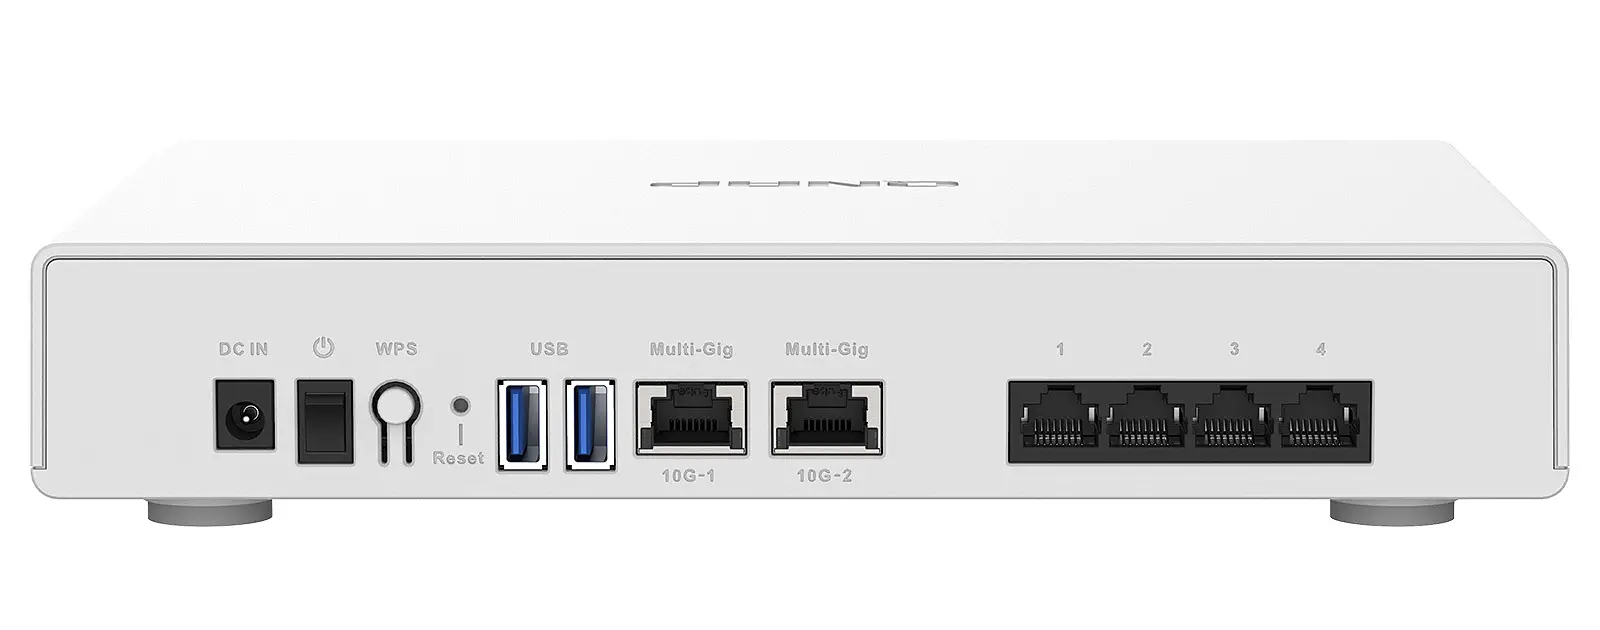 Le Qnap QHora-301W est équipé de 6 ports Ethernet dont 2 10GbE